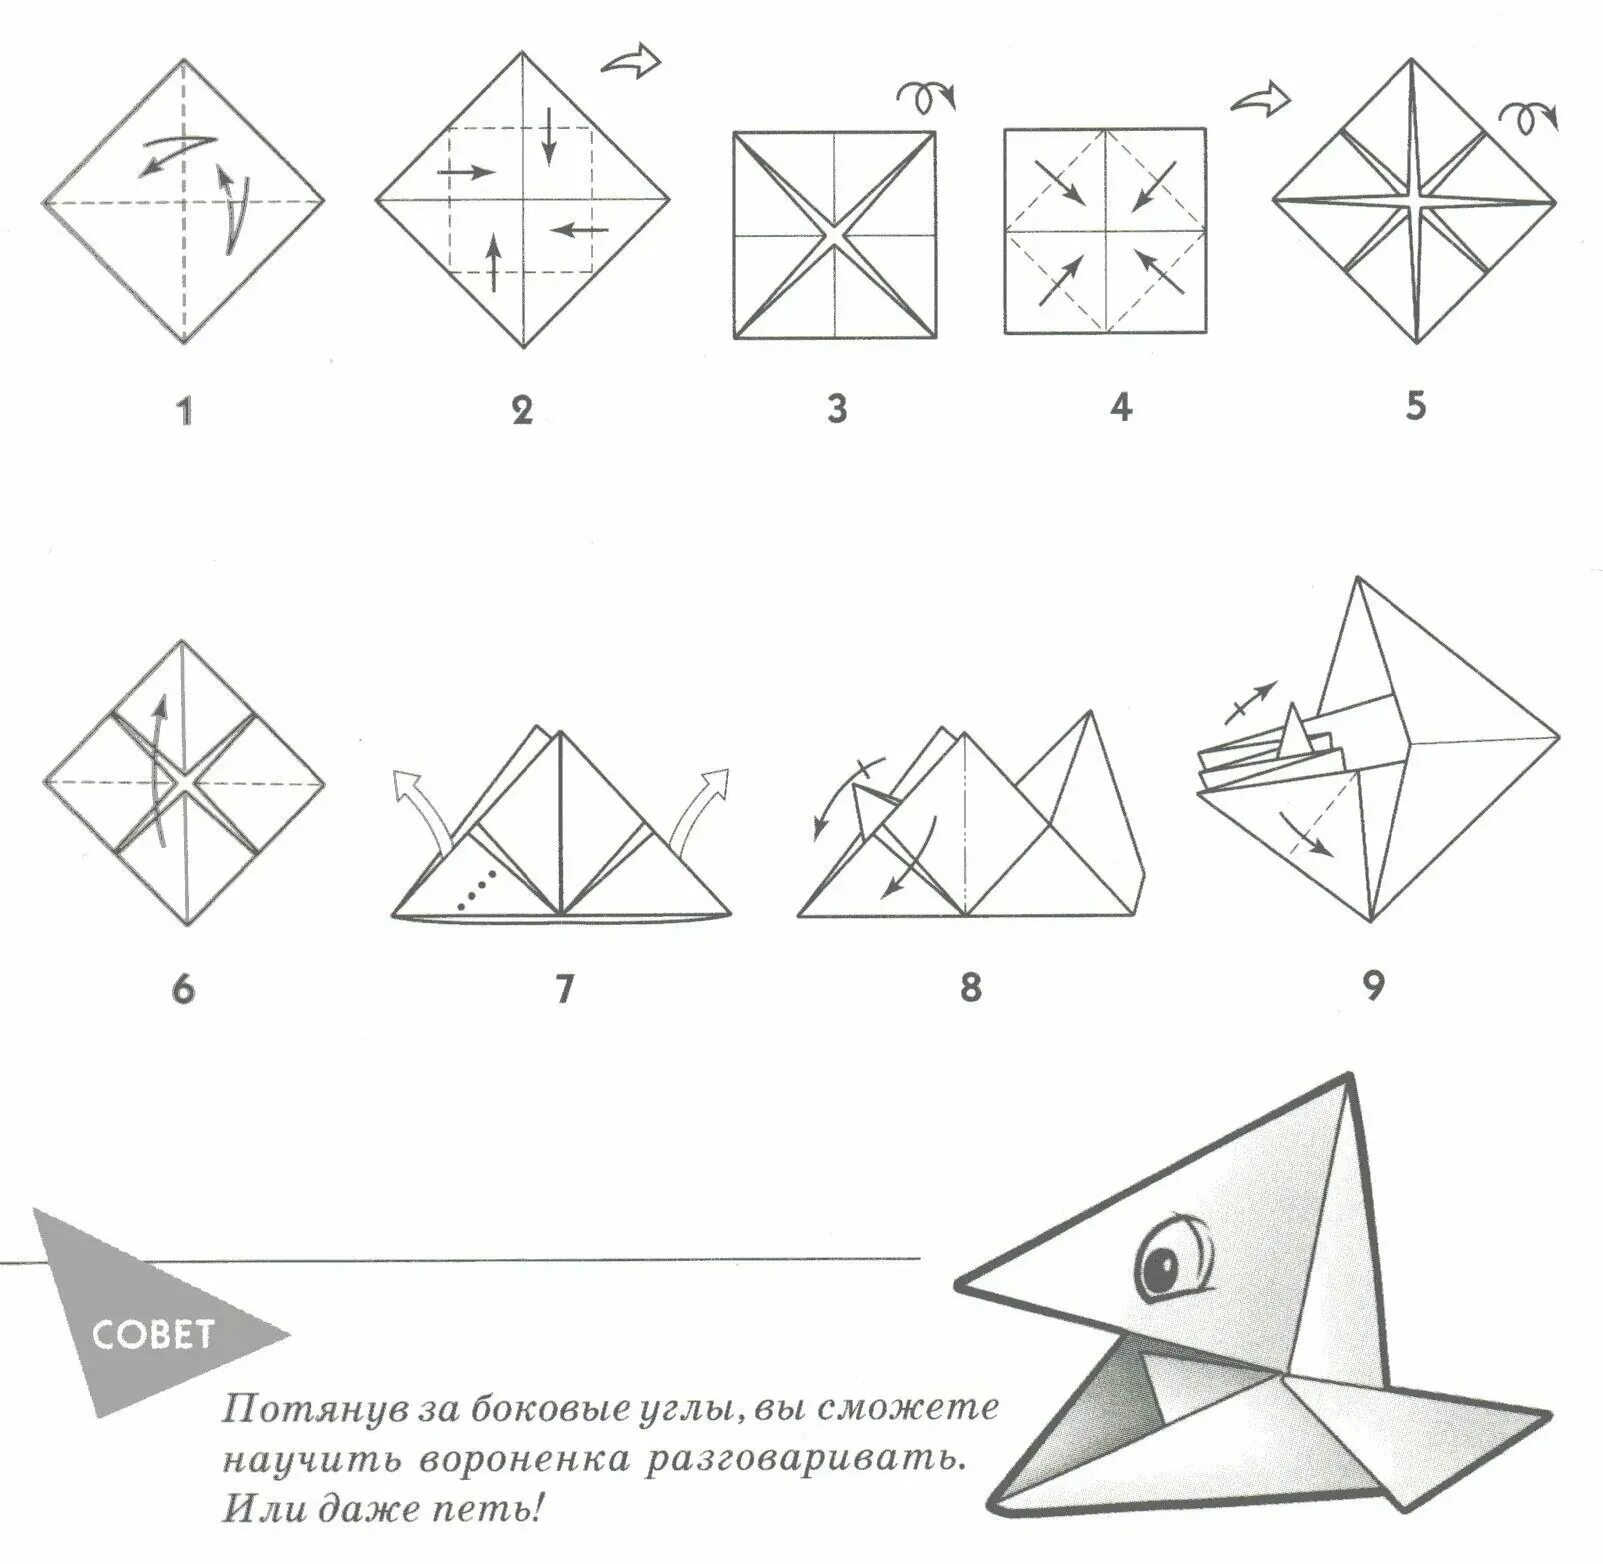 Сделать схему оригами. Поделка оригами из бумаги для начинающих пошагово. Оригами из бумаги для начинающих схемы пошагово. Поделки из бумаги схема складывания. Оригами из бумаги без клея схемы.